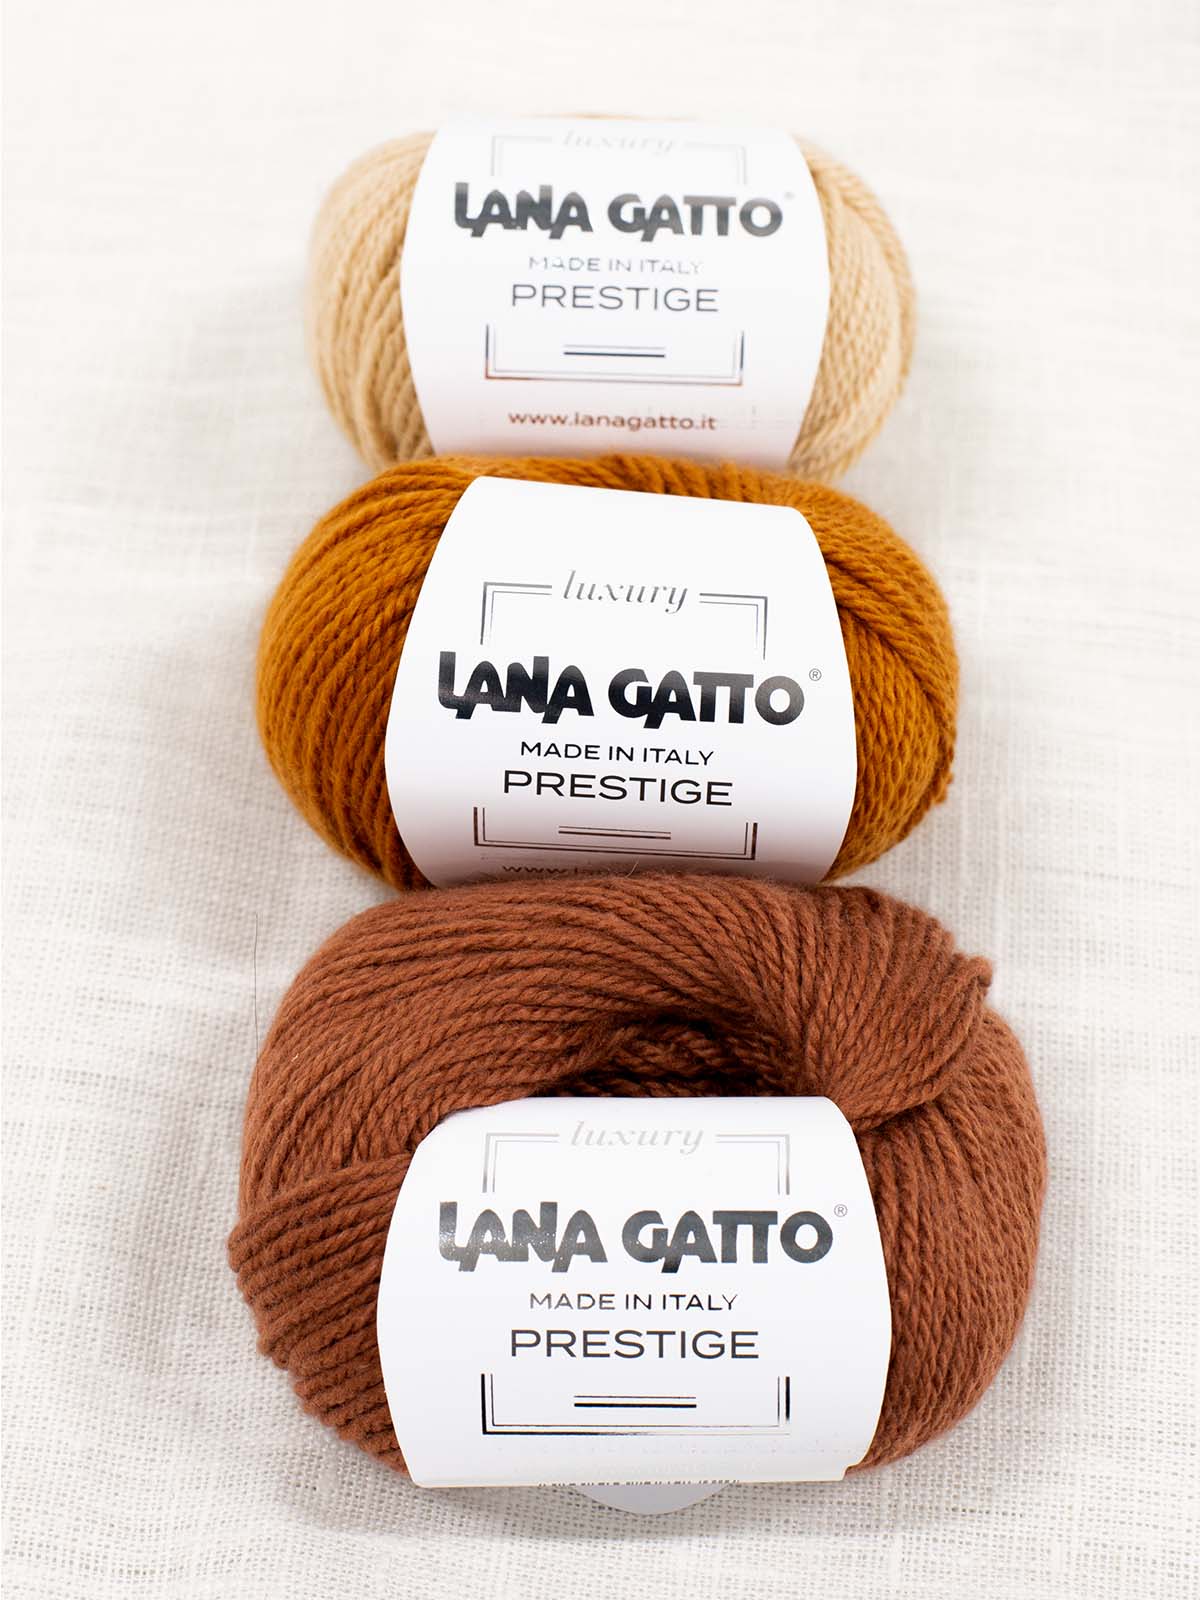 Lana Gatto Prestige